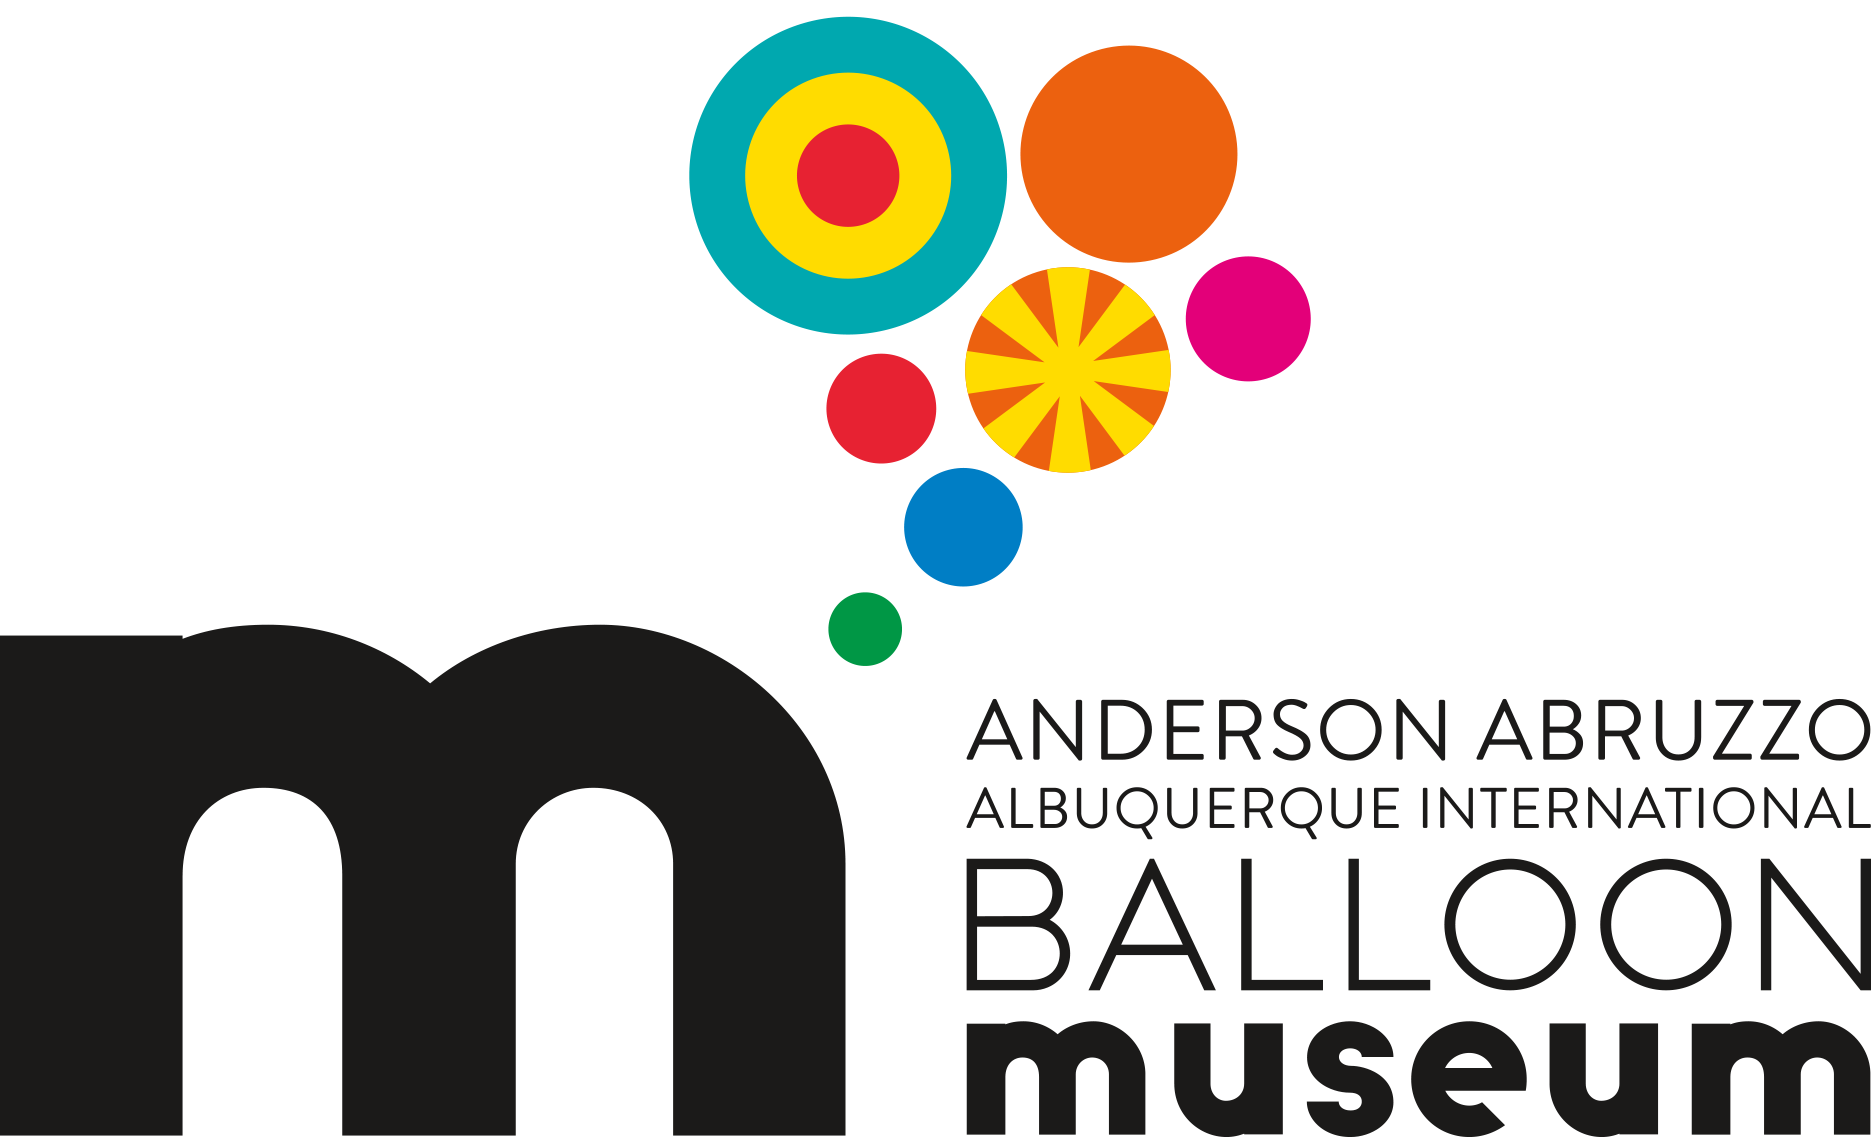 Anderson Abruzzo Albuquerque International Balloon Museum logo